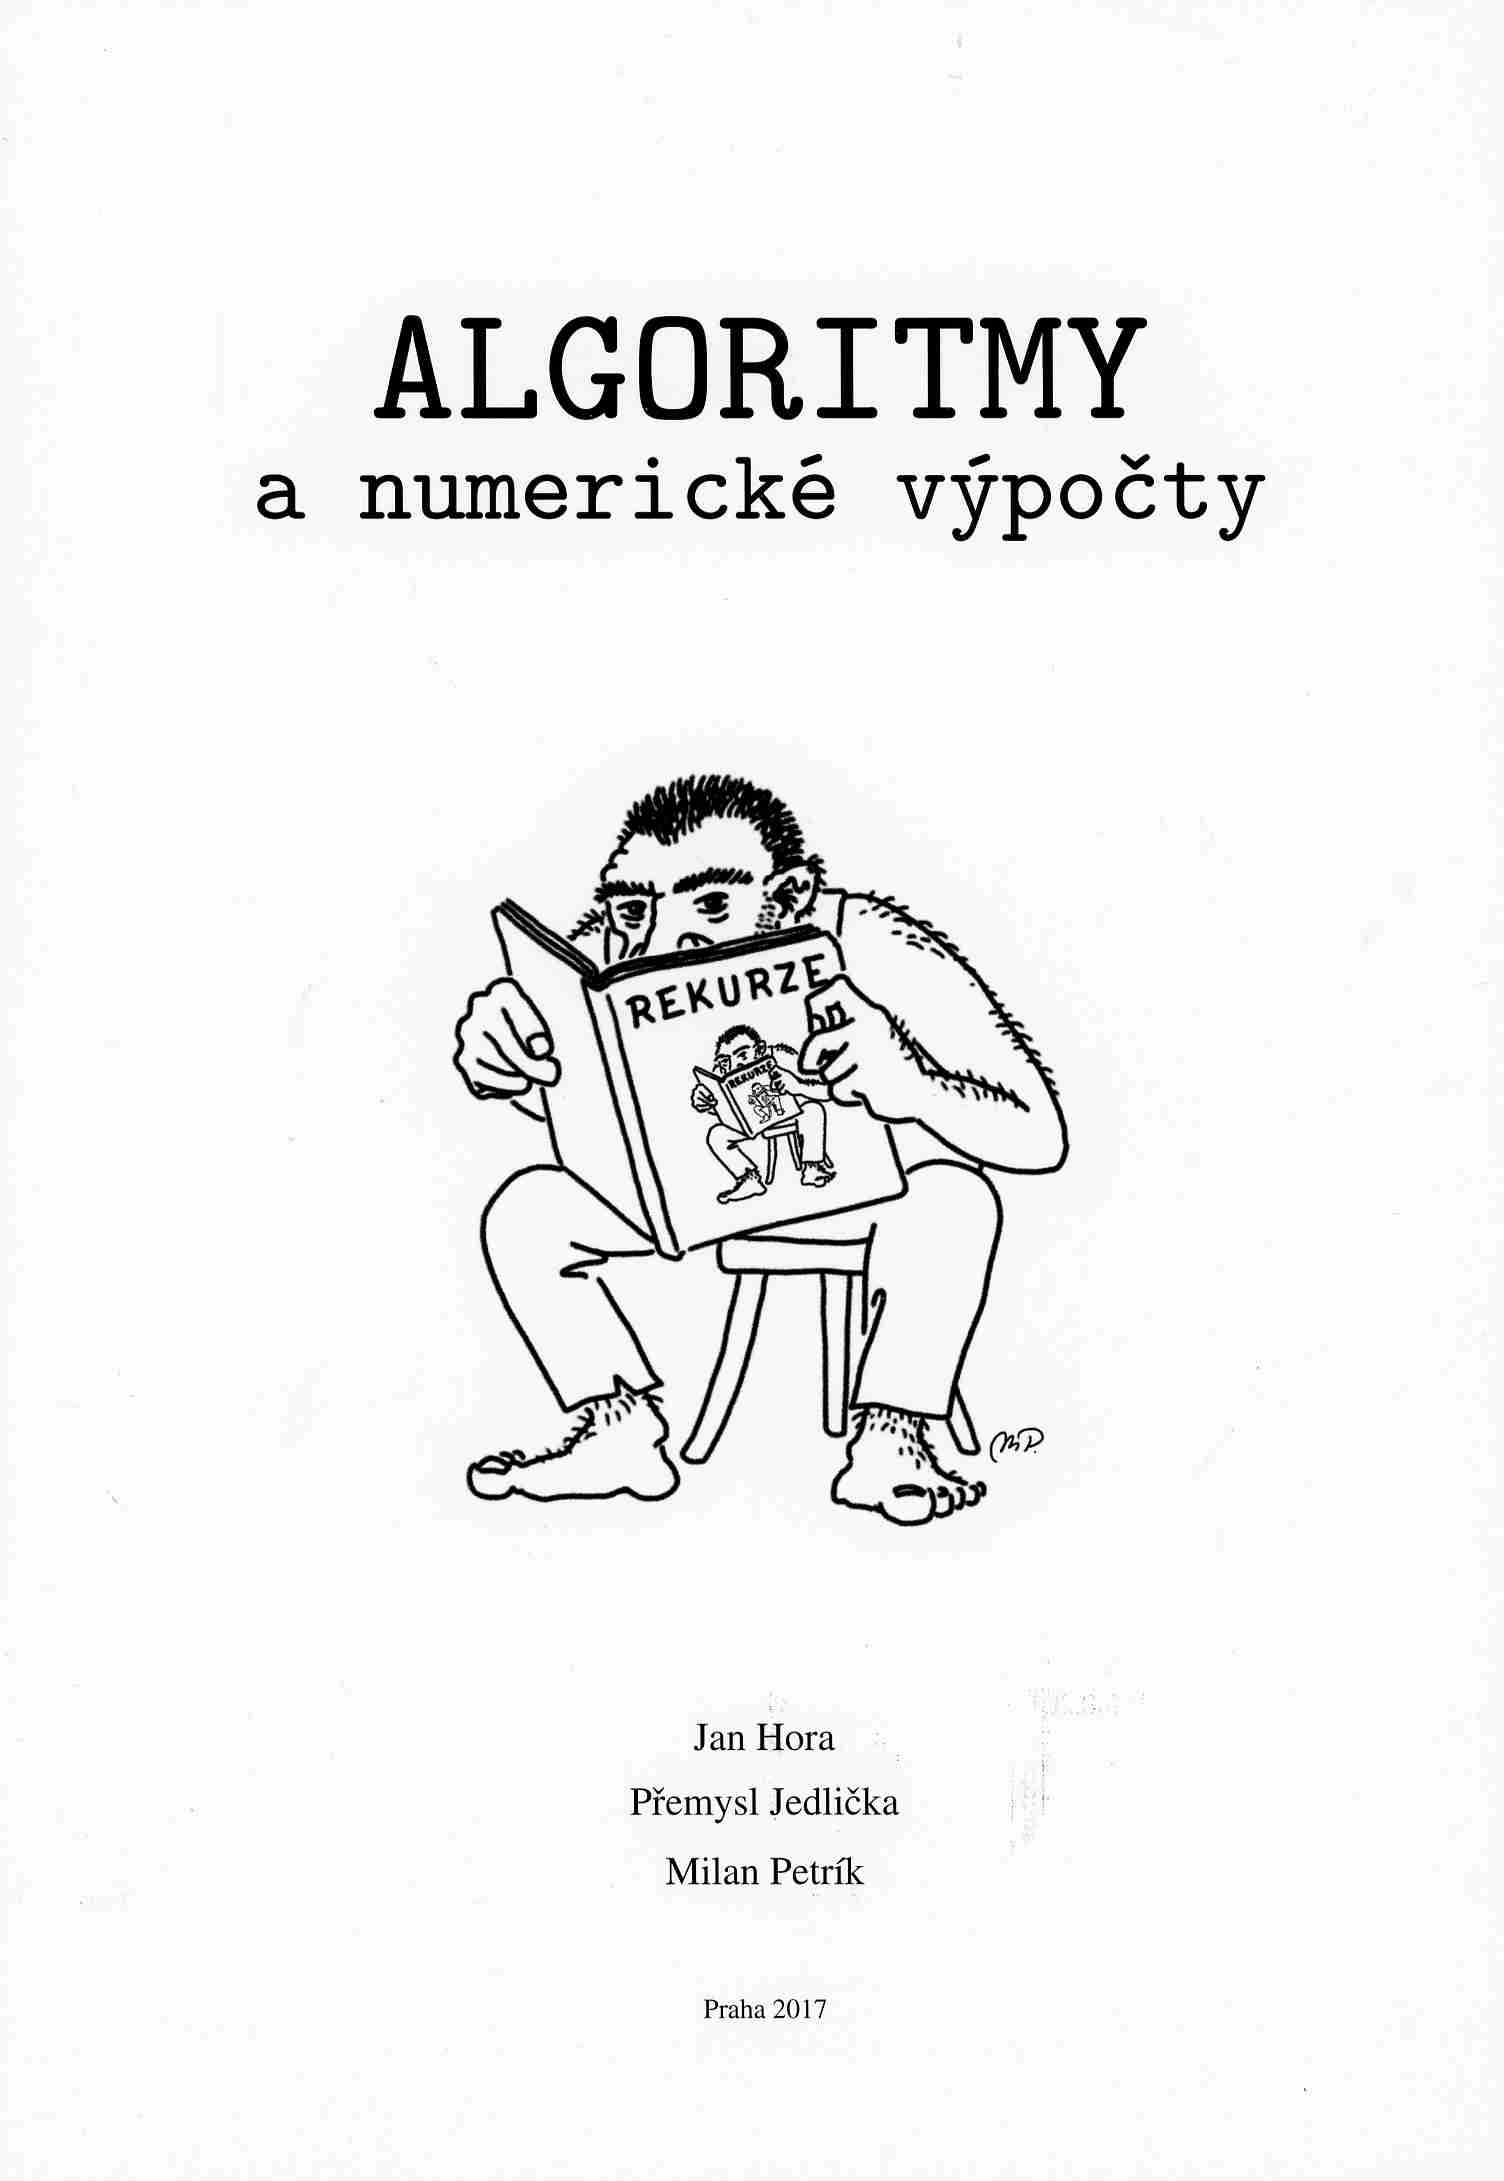 Algoritmy a numerické výpočty, 322